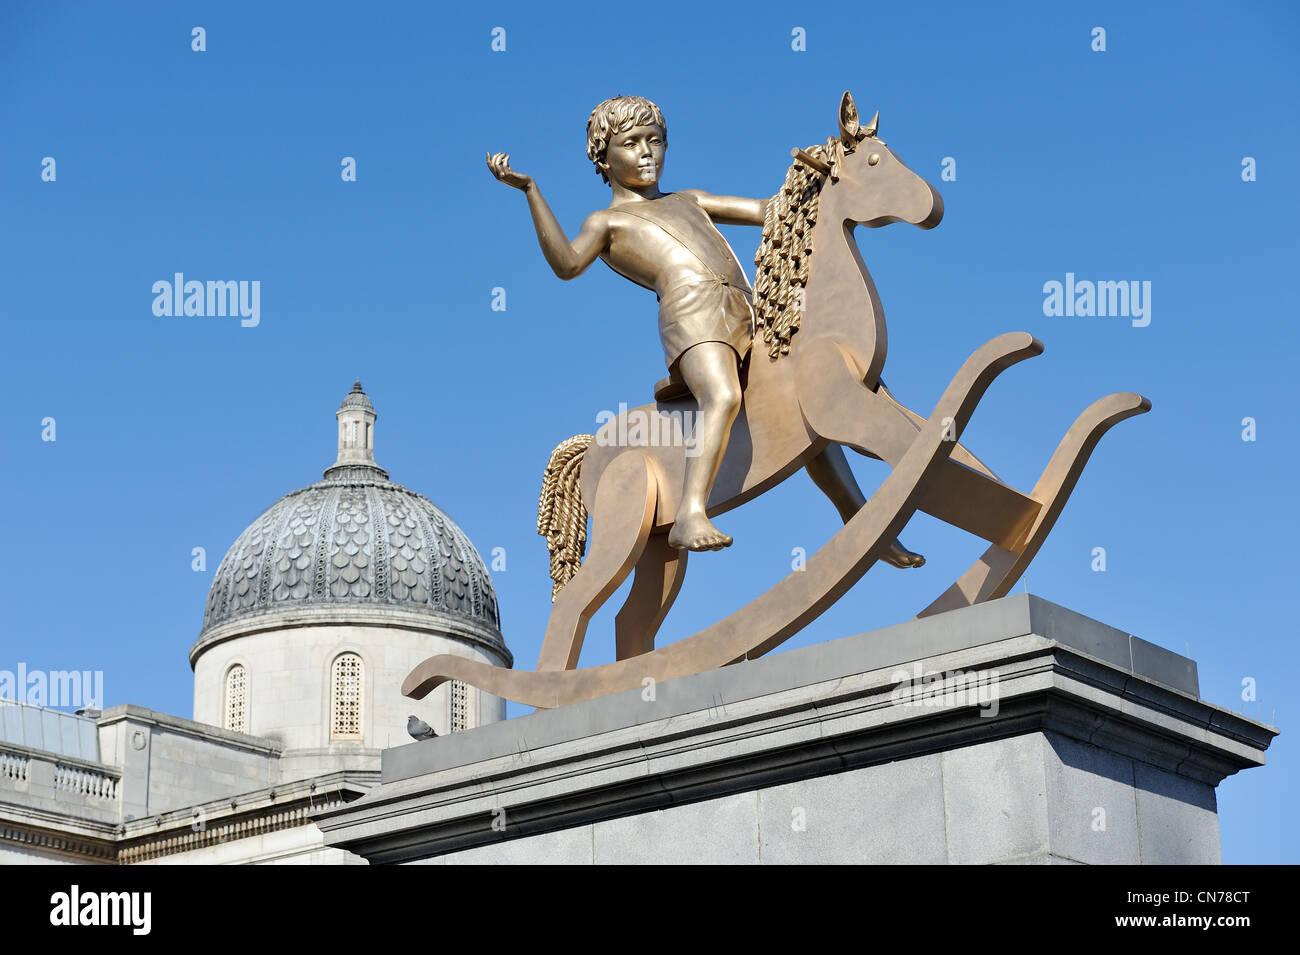 Le garçon sur un cheval à bascule sur le quatrième socle Trafalgar Square Londres par les artistes Michael Elmgreen et Ingar Dragset Banque D'Images